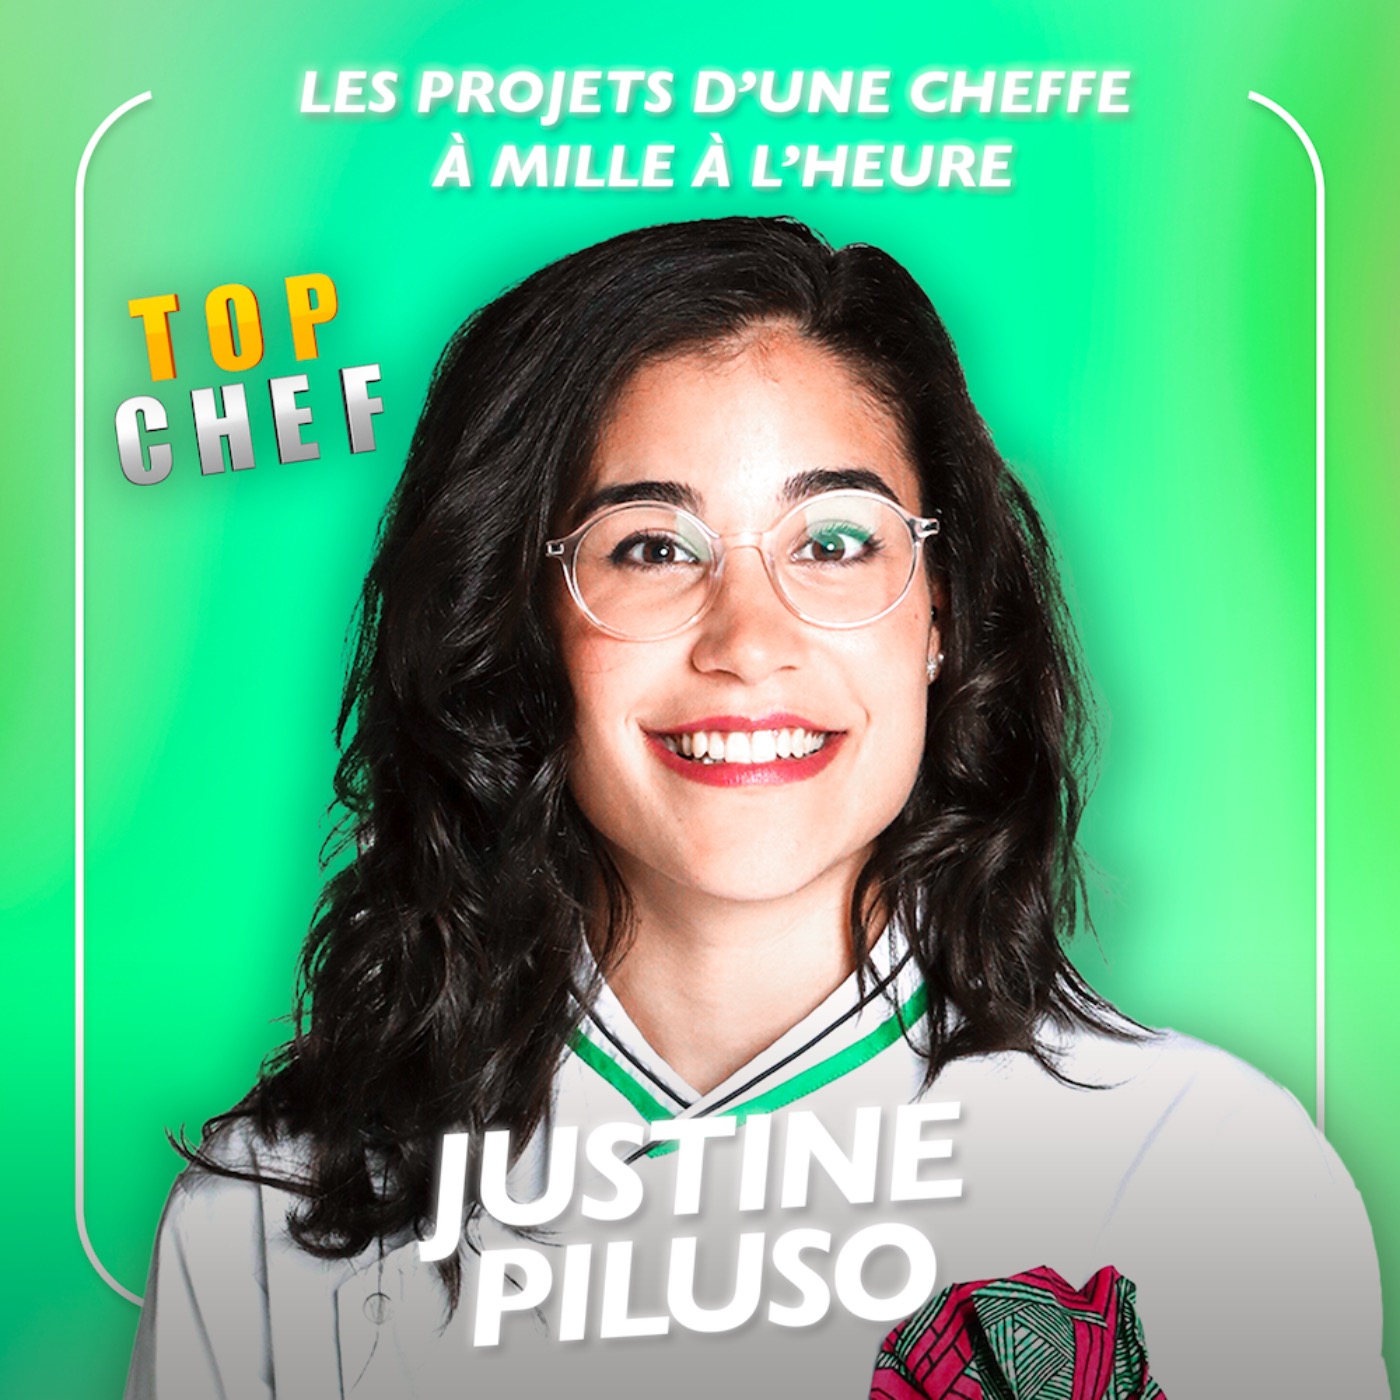 [SPÉCIALE TOP CHEF] Justine Piluso, les projets d’une cheffe à mille à l’heure